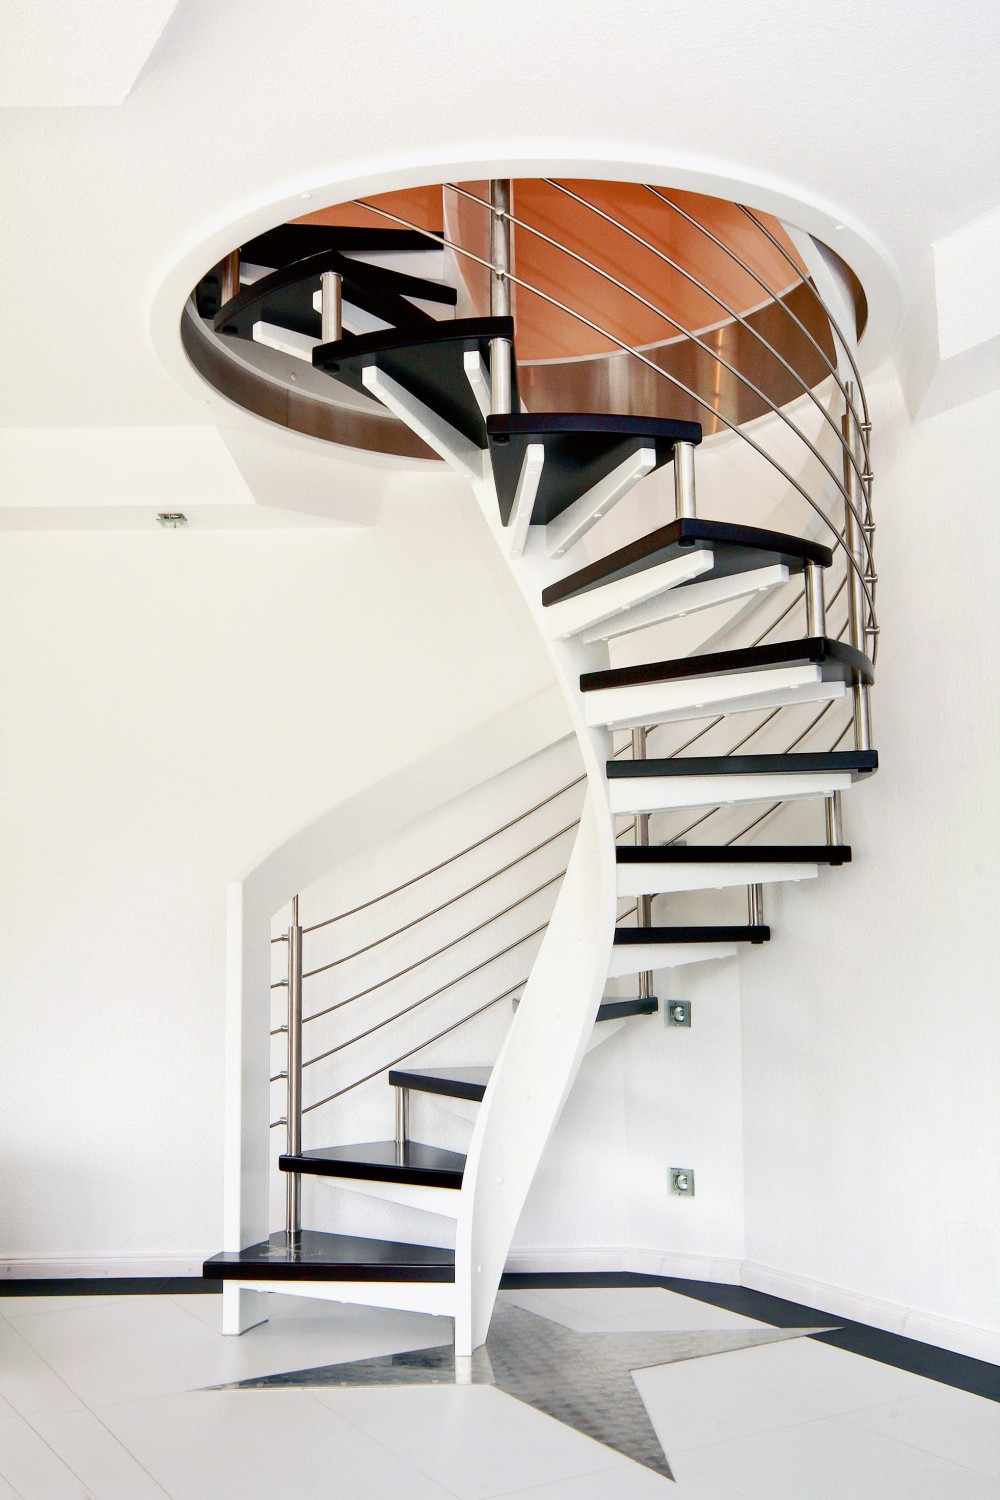 Rund ums Haus Individuelle Treppen von STREGER verbinden moderne Architektur mit historischen Elementen - News, Bild 1